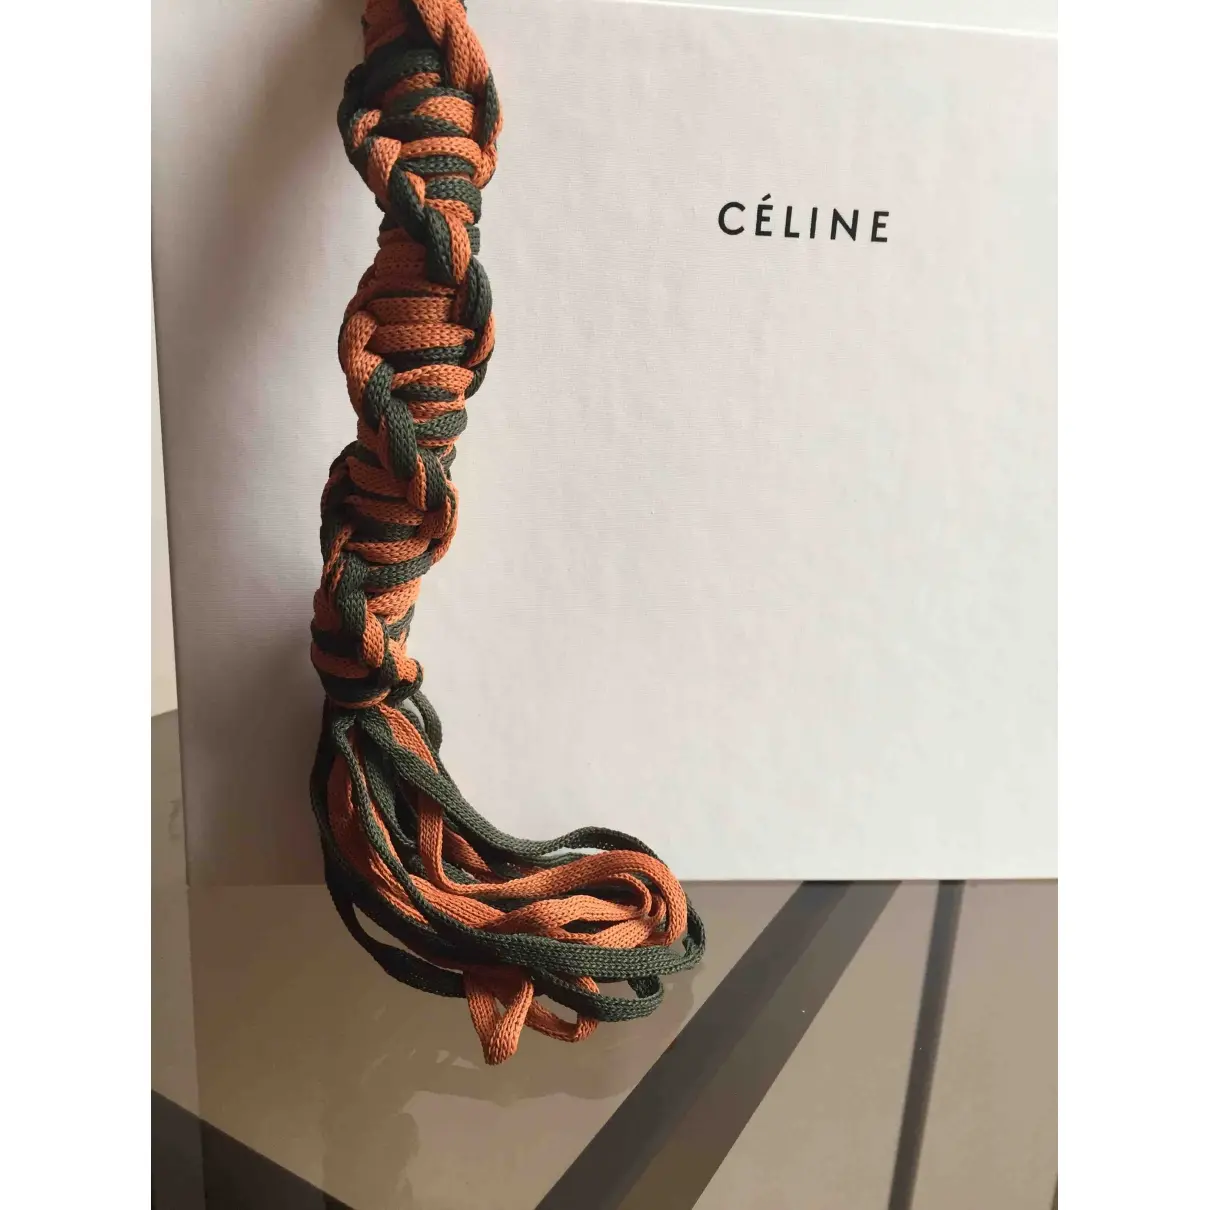 Celine Bag charm for sale